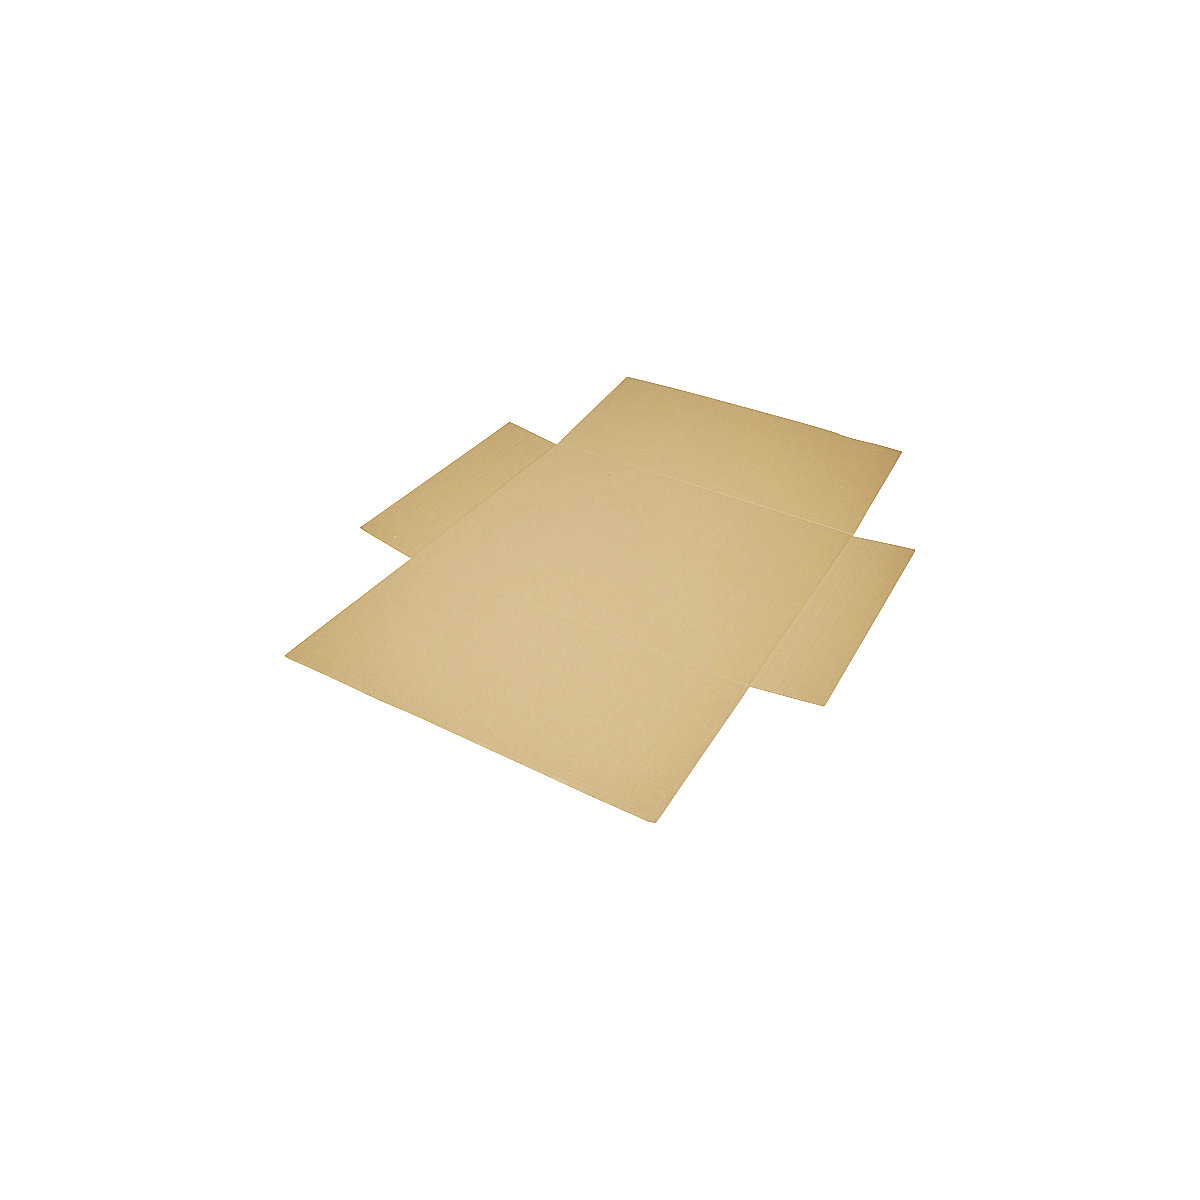 Imballaggio incrociato, in pezzo unico, a 1 parete, marrone, lungh. x largh. 600 x 425 mm, altezza di riempimento 50 mm, a partire da 300 pz.-8